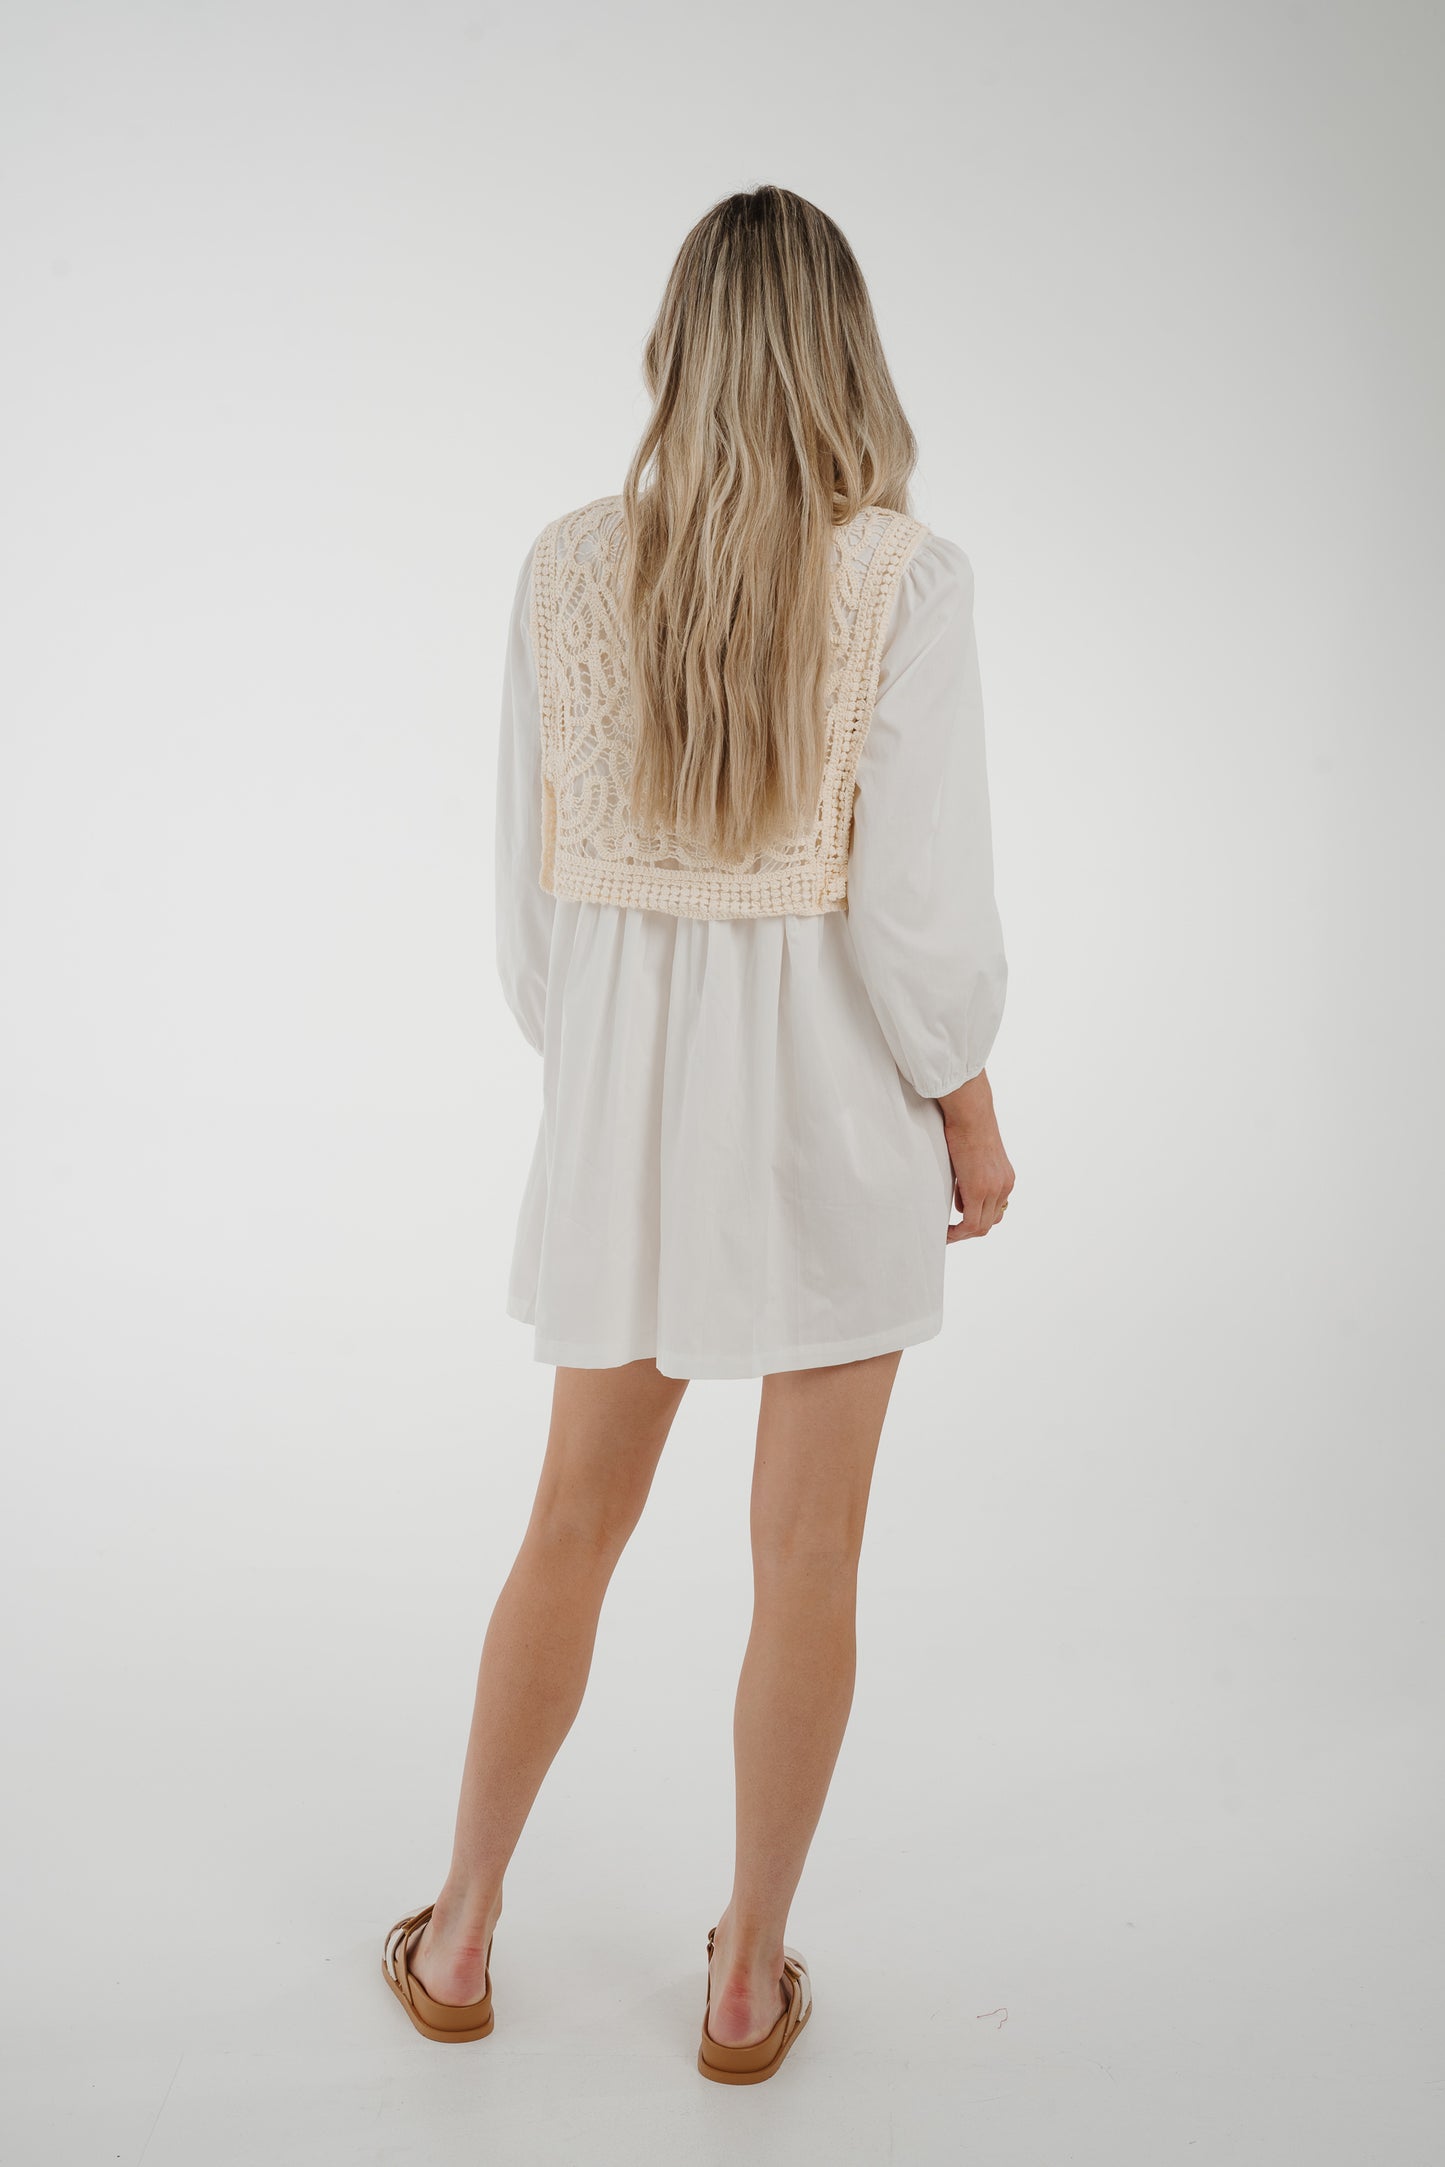 Holly Crochet Overlay Dress In White